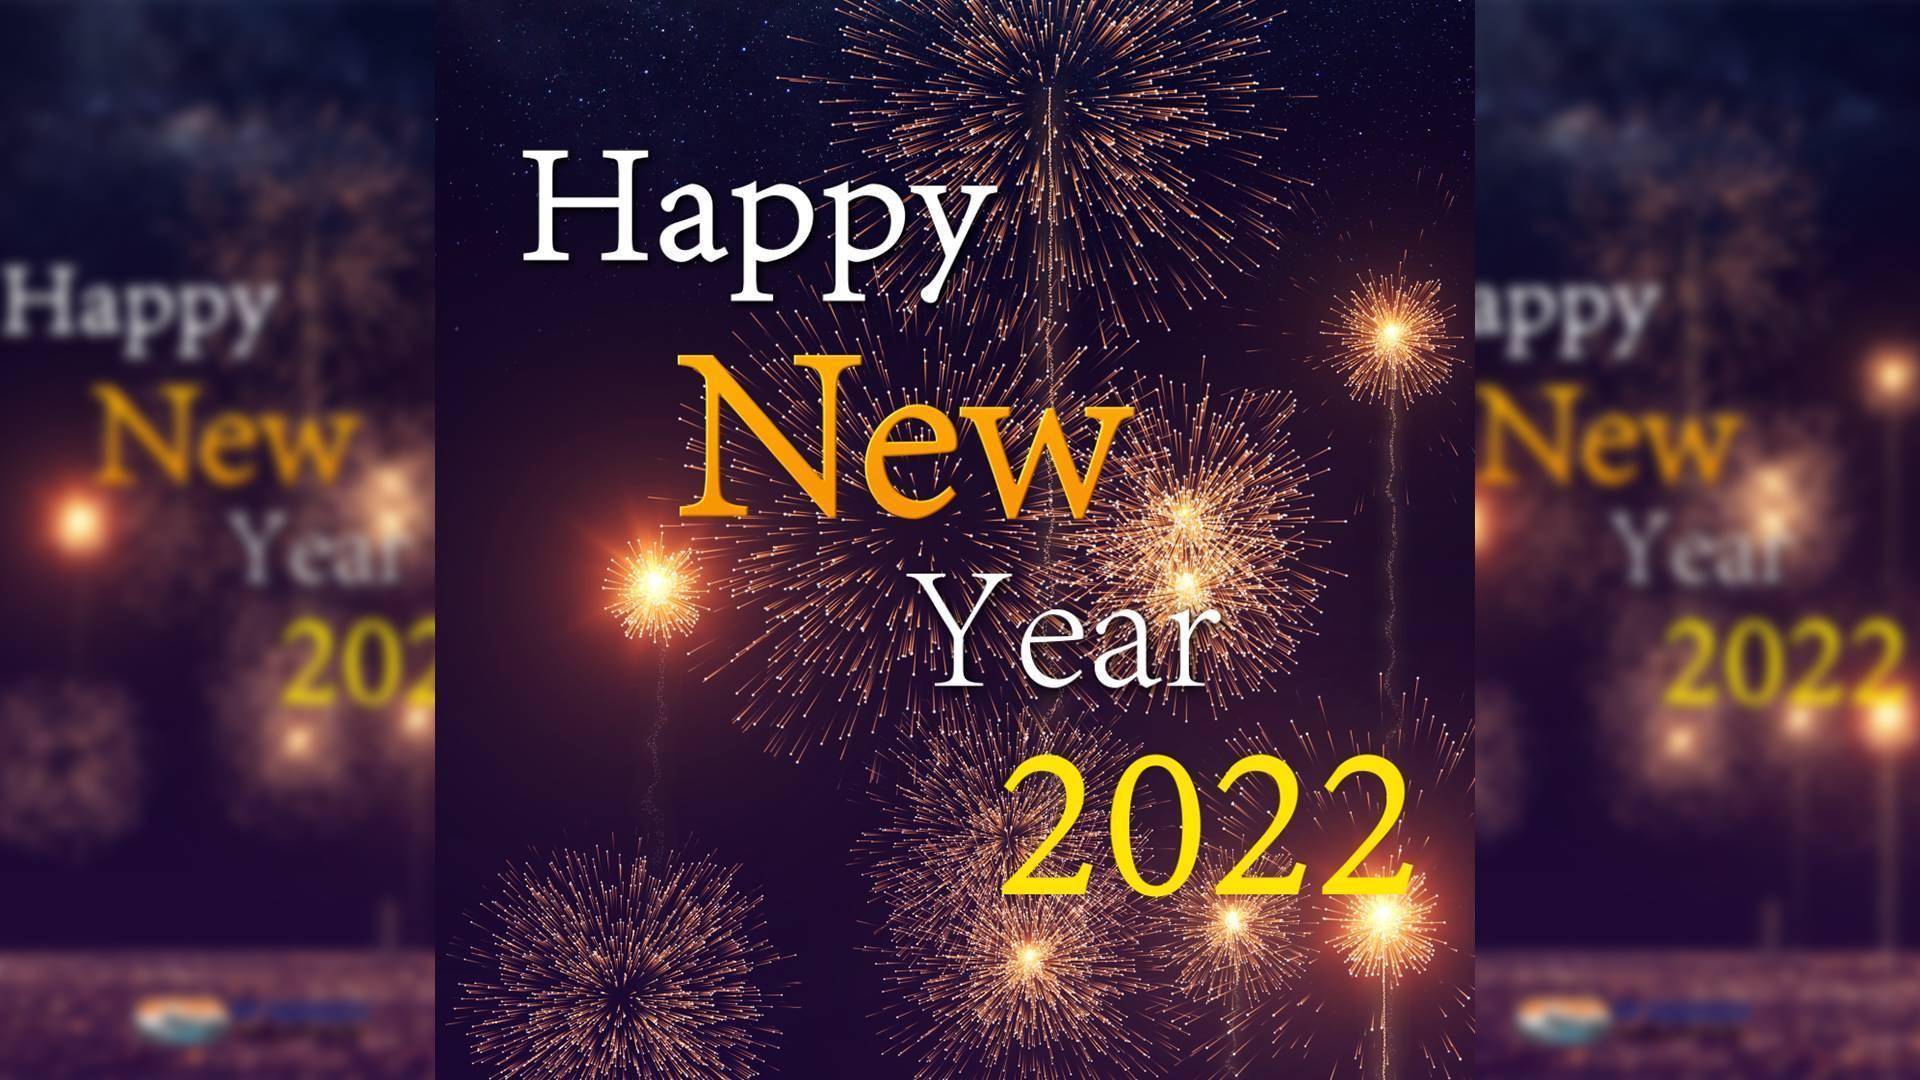 2022年 令和4年・謹賀新年 Happy New Year Countdown Movie 2022. ハッピーニューイヤー カウントダウン ムービー 2022年・令和4年。明けましておめでとうございます。